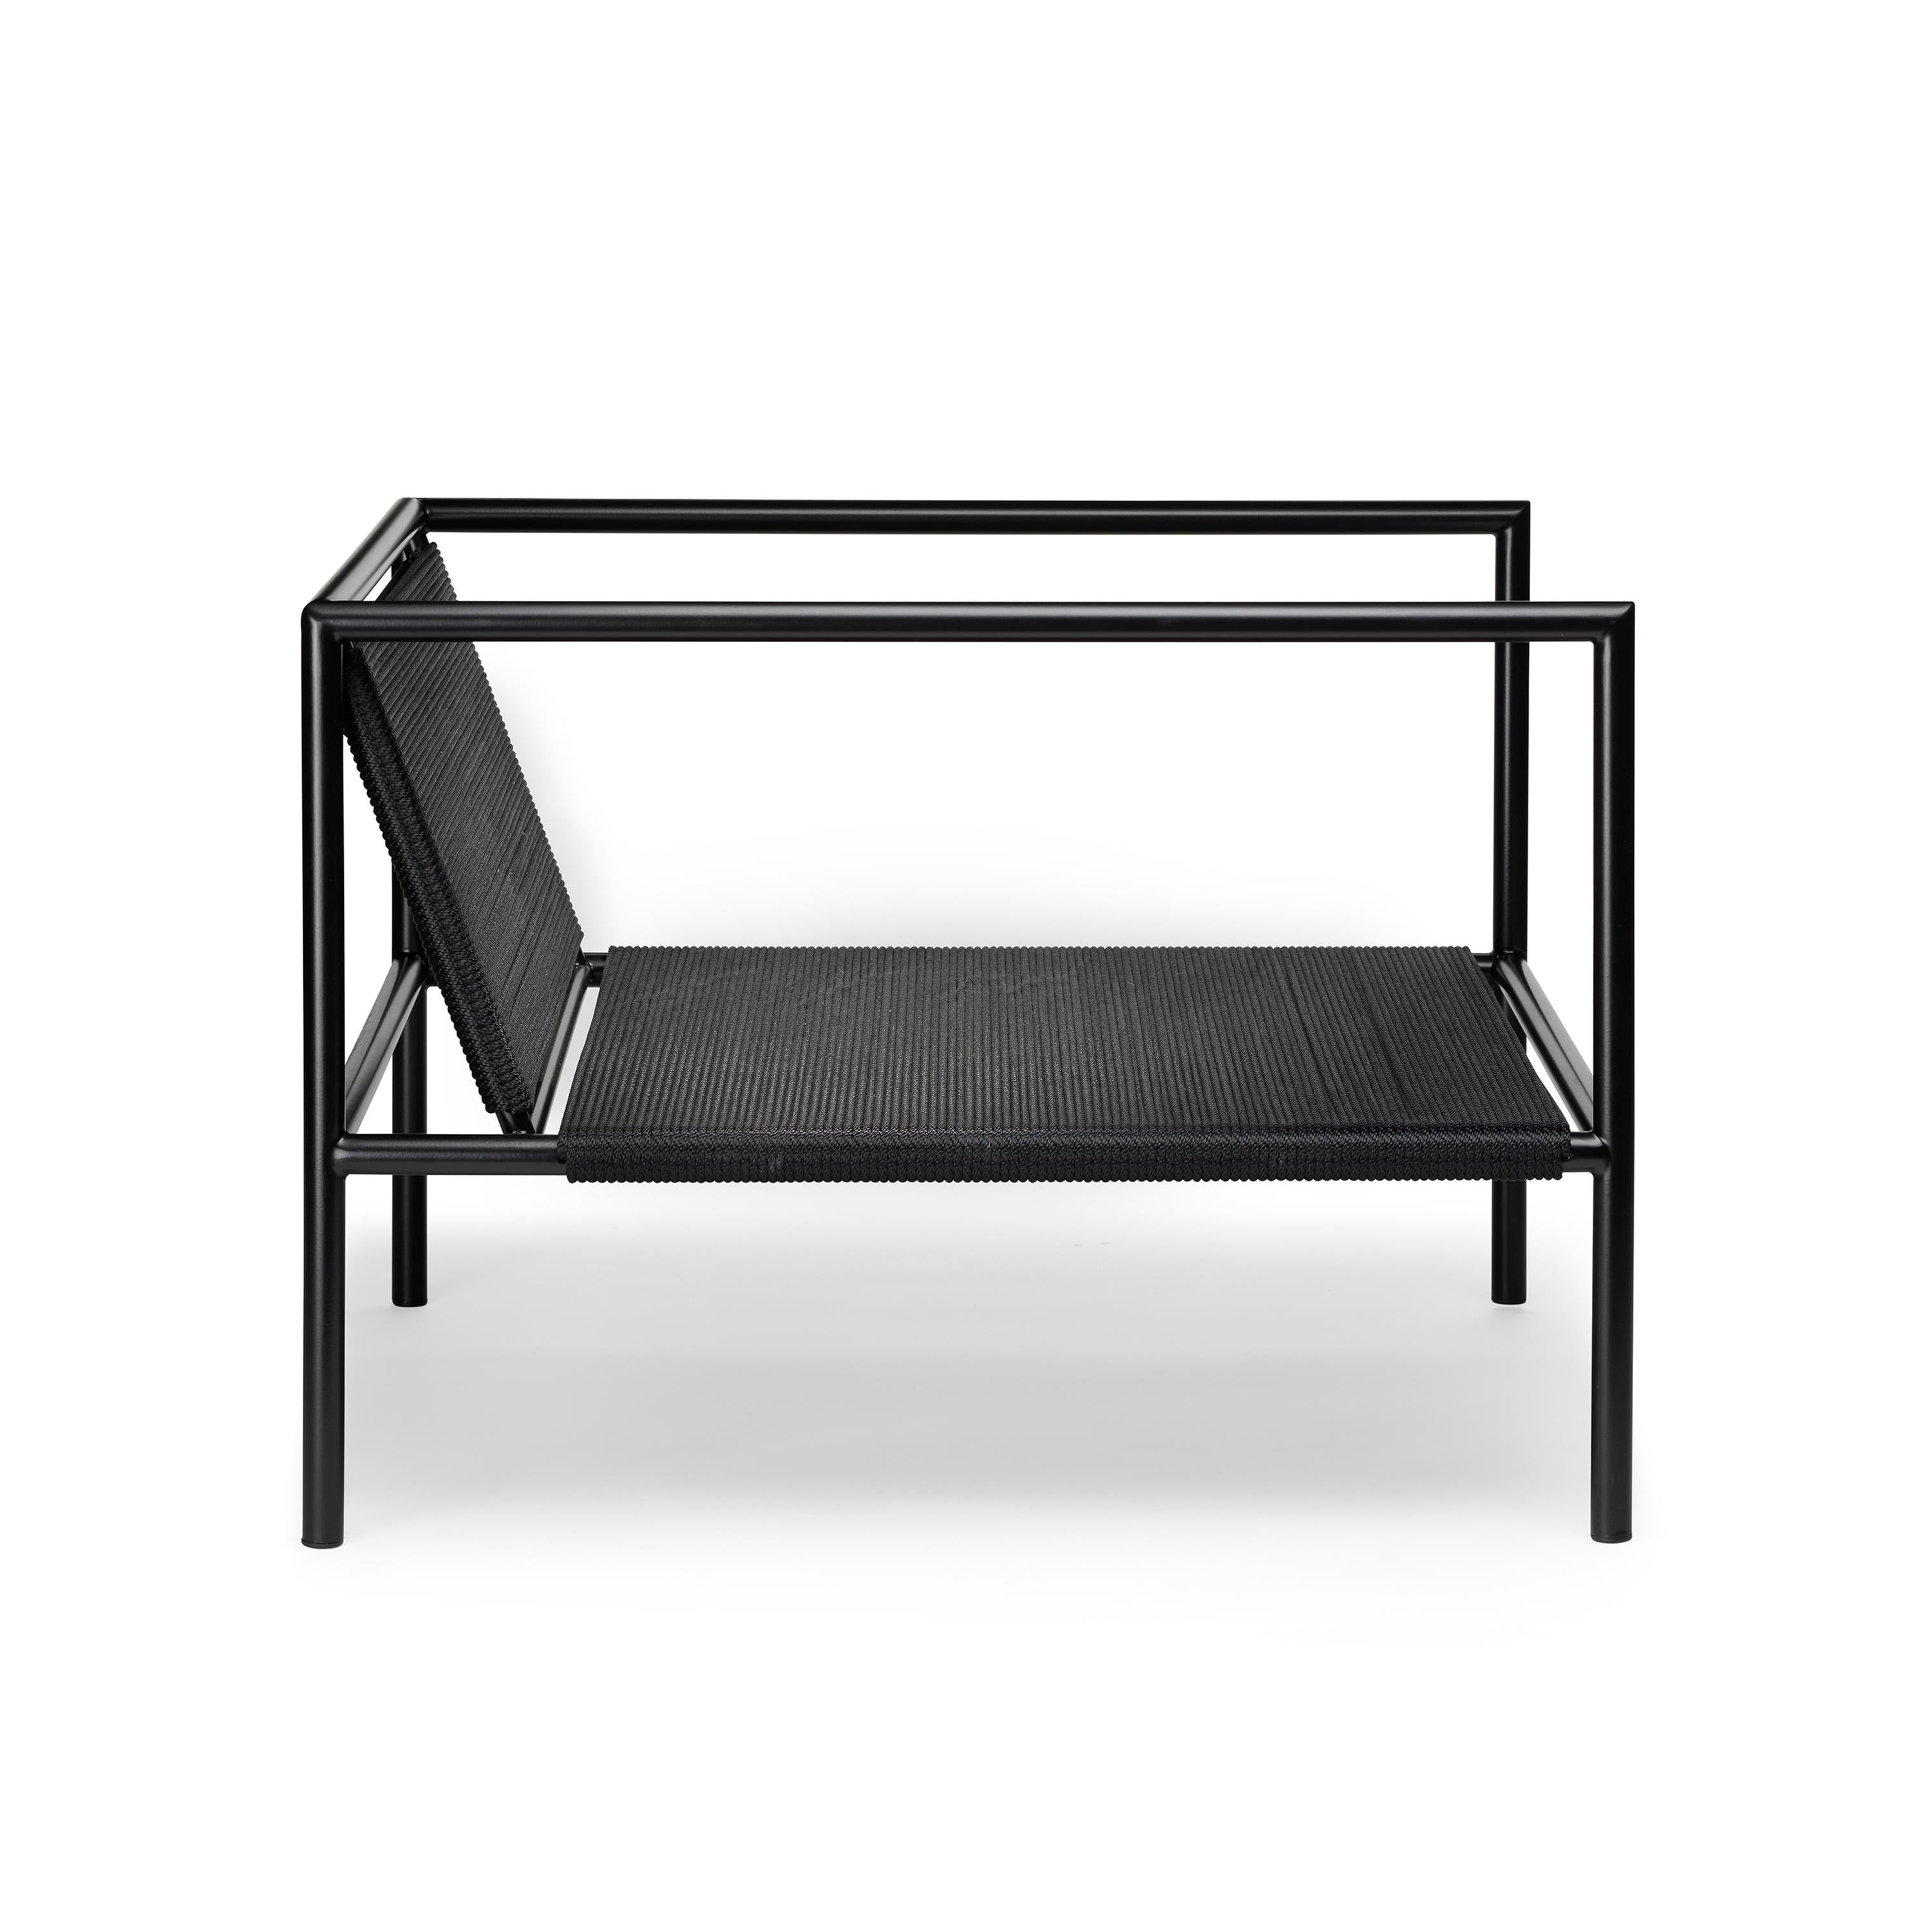 Ten10 1.2.3 Serie Outdoor-Sessel aus halbglänzend schwarz pulverbeschichtetem Edelstahl, Nylonschnur in schwarz oder weiß und 4